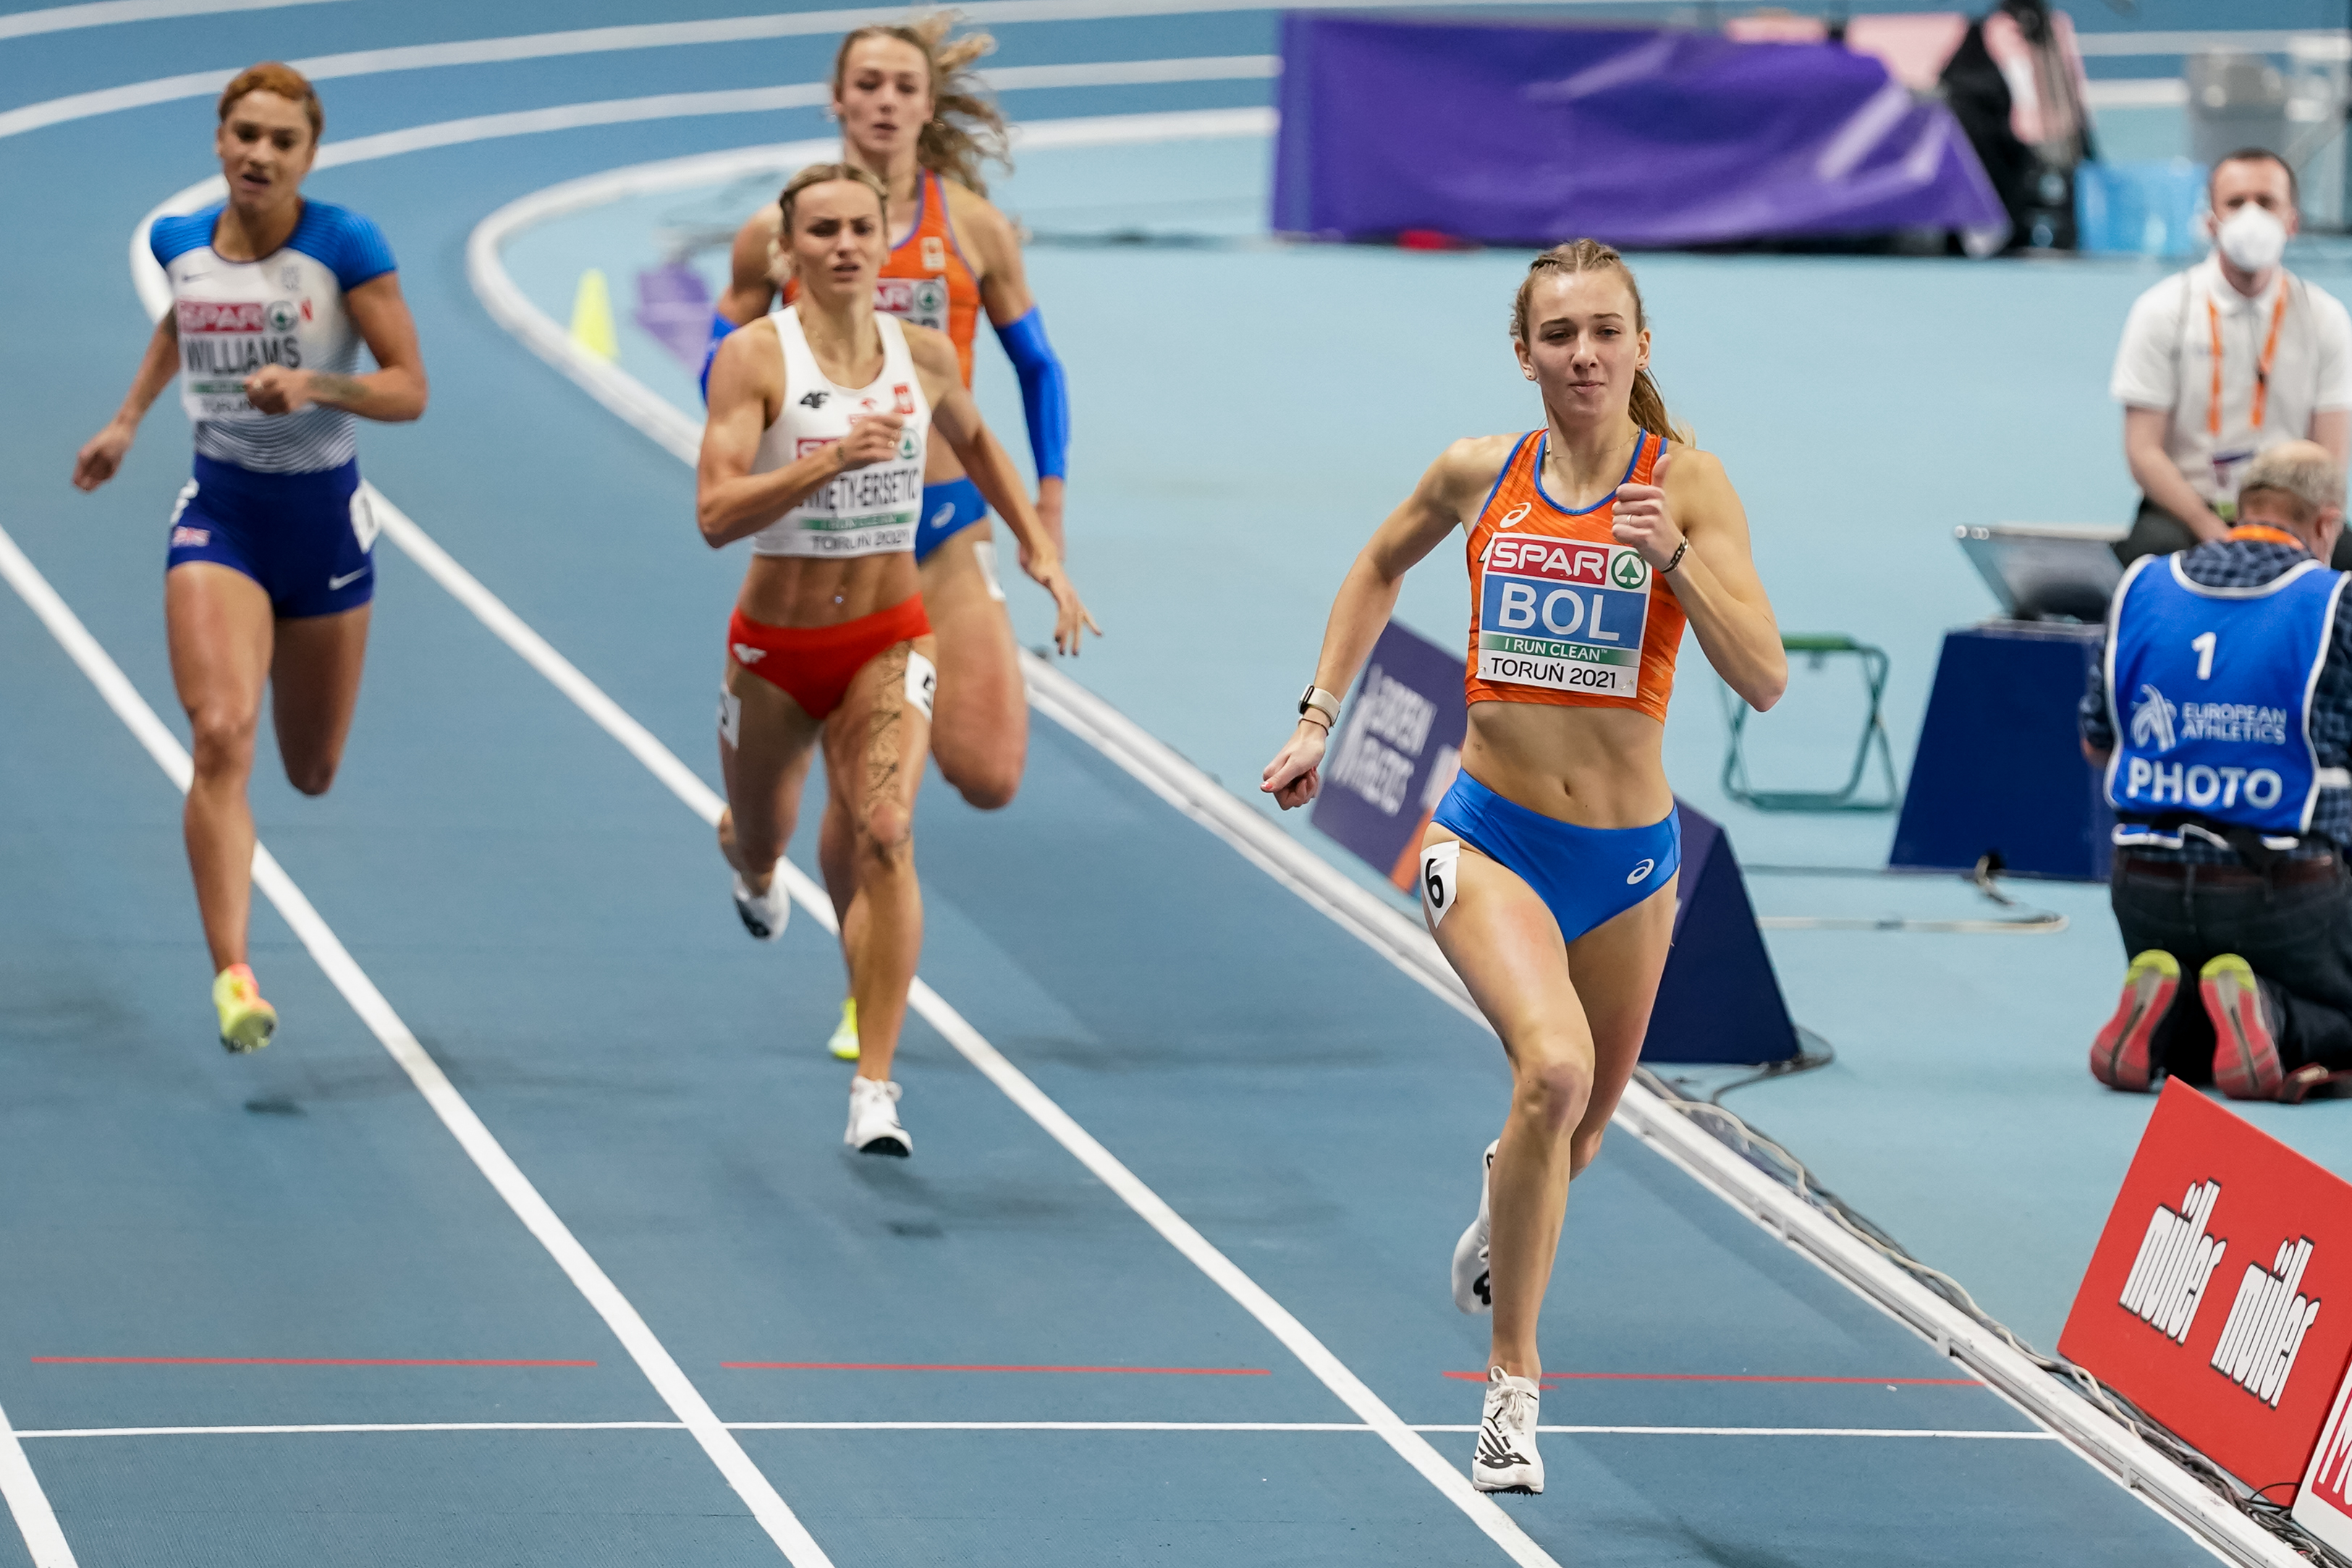 2022 European Athletics Championships – Women's 5000 metres - Wikipedia